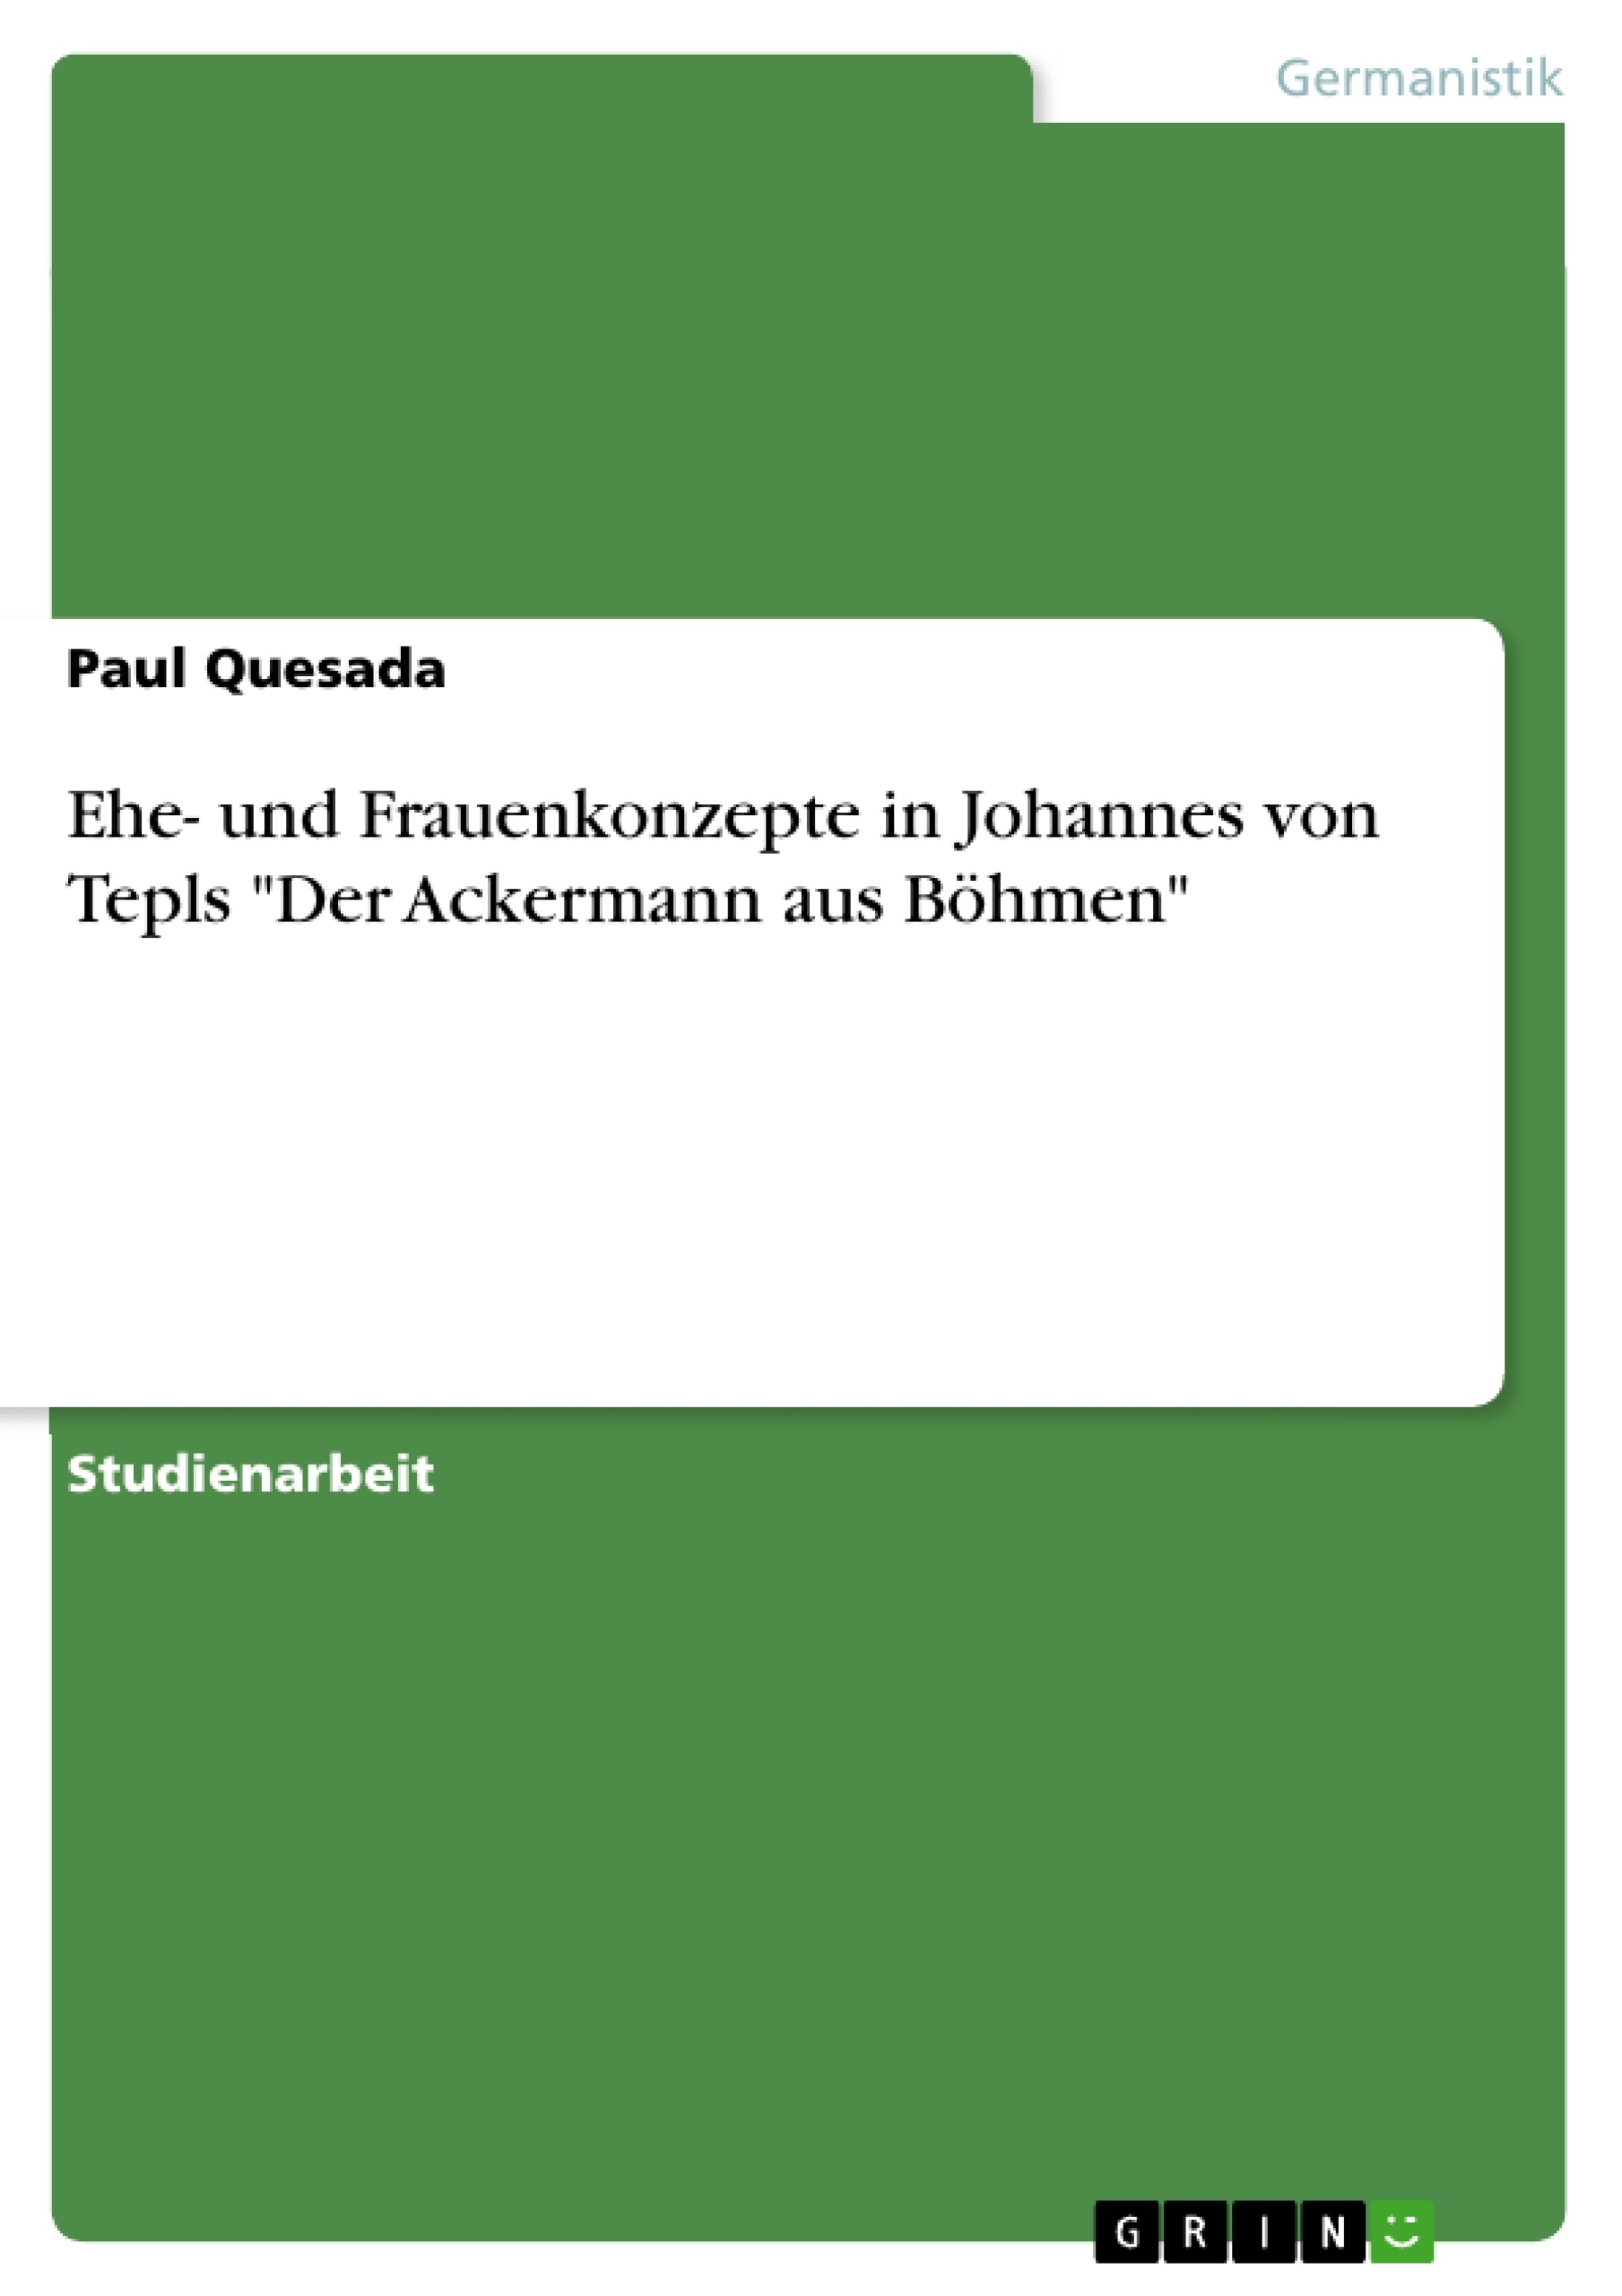 Title: Ehe- und Frauenkonzepte in Johannes von Tepls "Der Ackermann aus Böhmen"